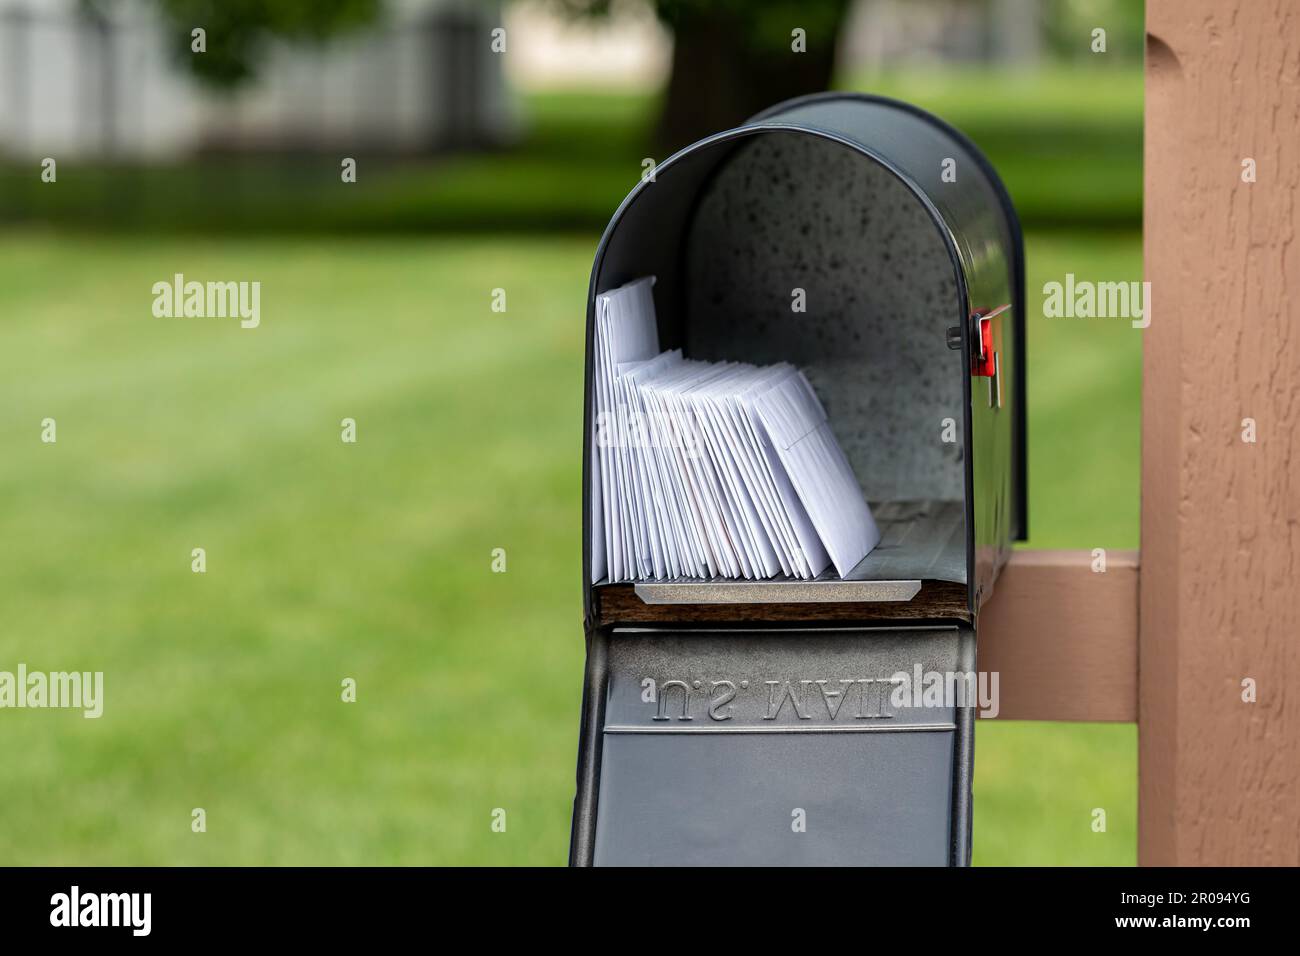 Boîte aux lettres pleine de lettres et de courrier indésirable. Concept de la livraison du courrier, du bureau de poste et du service postal. Banque D'Images